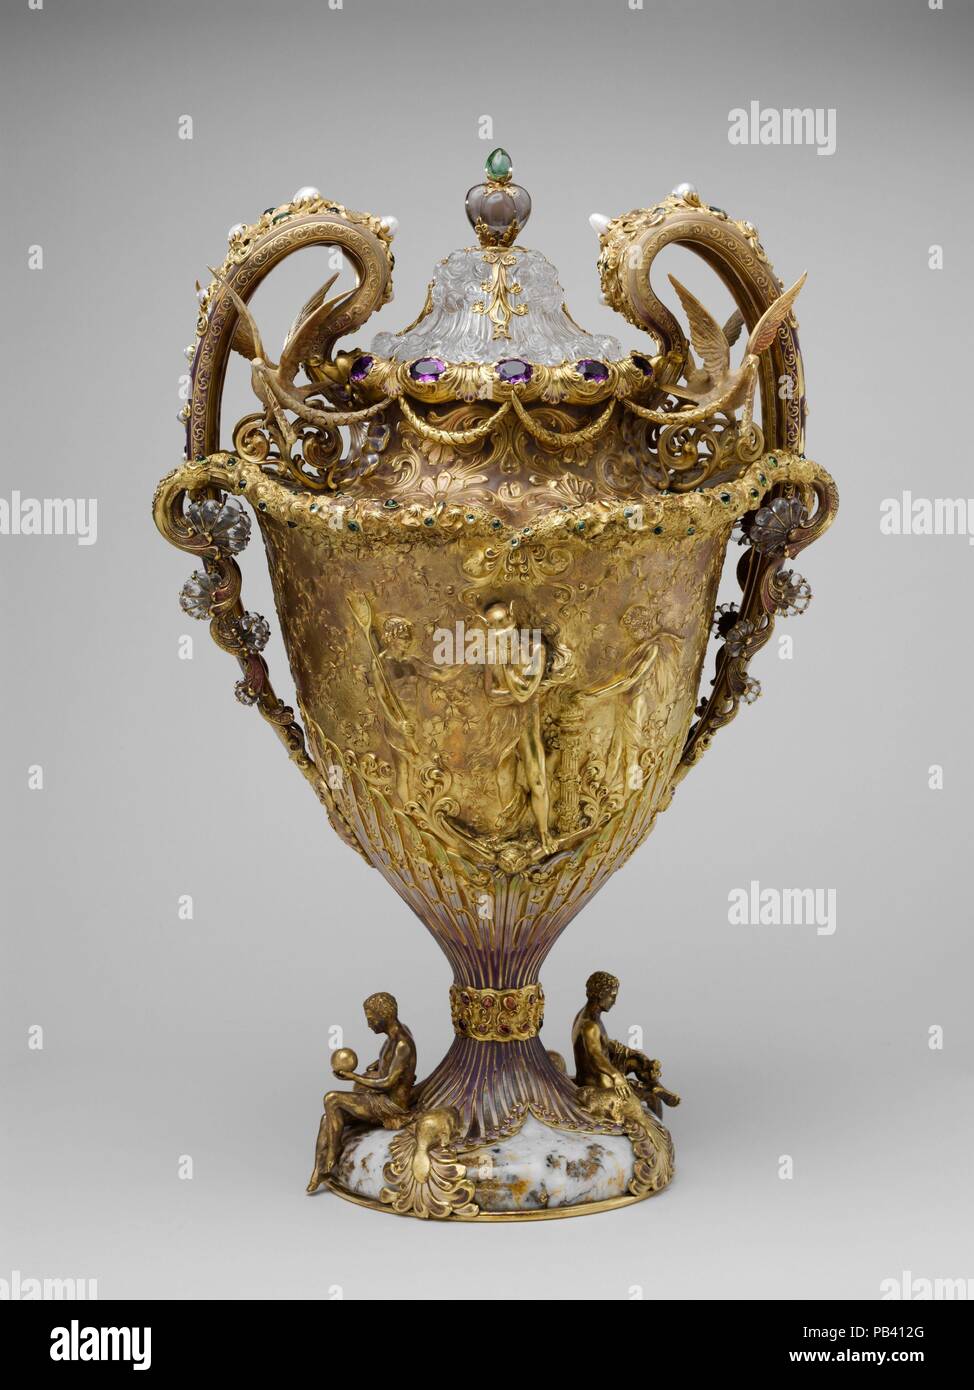 Die Adams Vase. Kultur: American. Designer: Durch Paulding Farnham ausgelegt (1859-1927). Abmessungen: Insgesamt: 19 7/16 x 13 x 9 cm. (49,4 x 33 x 23,5 cm); 352 oz. 18 dwt. (10977 g) Körper: H.18 cm. (47,9 cm) Deckel: 4 1/4 x 4 13/16 in. (10,8 x 12,2 cm); 19 oz. 6 dwt. (600,1 g). Hersteller: Hergestellt von Tiffany & Co (1837 - heute). Datum: 1893-95. Auftrag zu Ehren von Edward Dekan Adams, Vorsitzender des Vorstands der amerikanische Baumwolle Oil Company, Bejeweled und emaillierte gold Vase wurde entwickelt, um die Baumwolle zu ähneln. Die allgemeine Form und Färbung emulieren, die der Bell Stockfoto